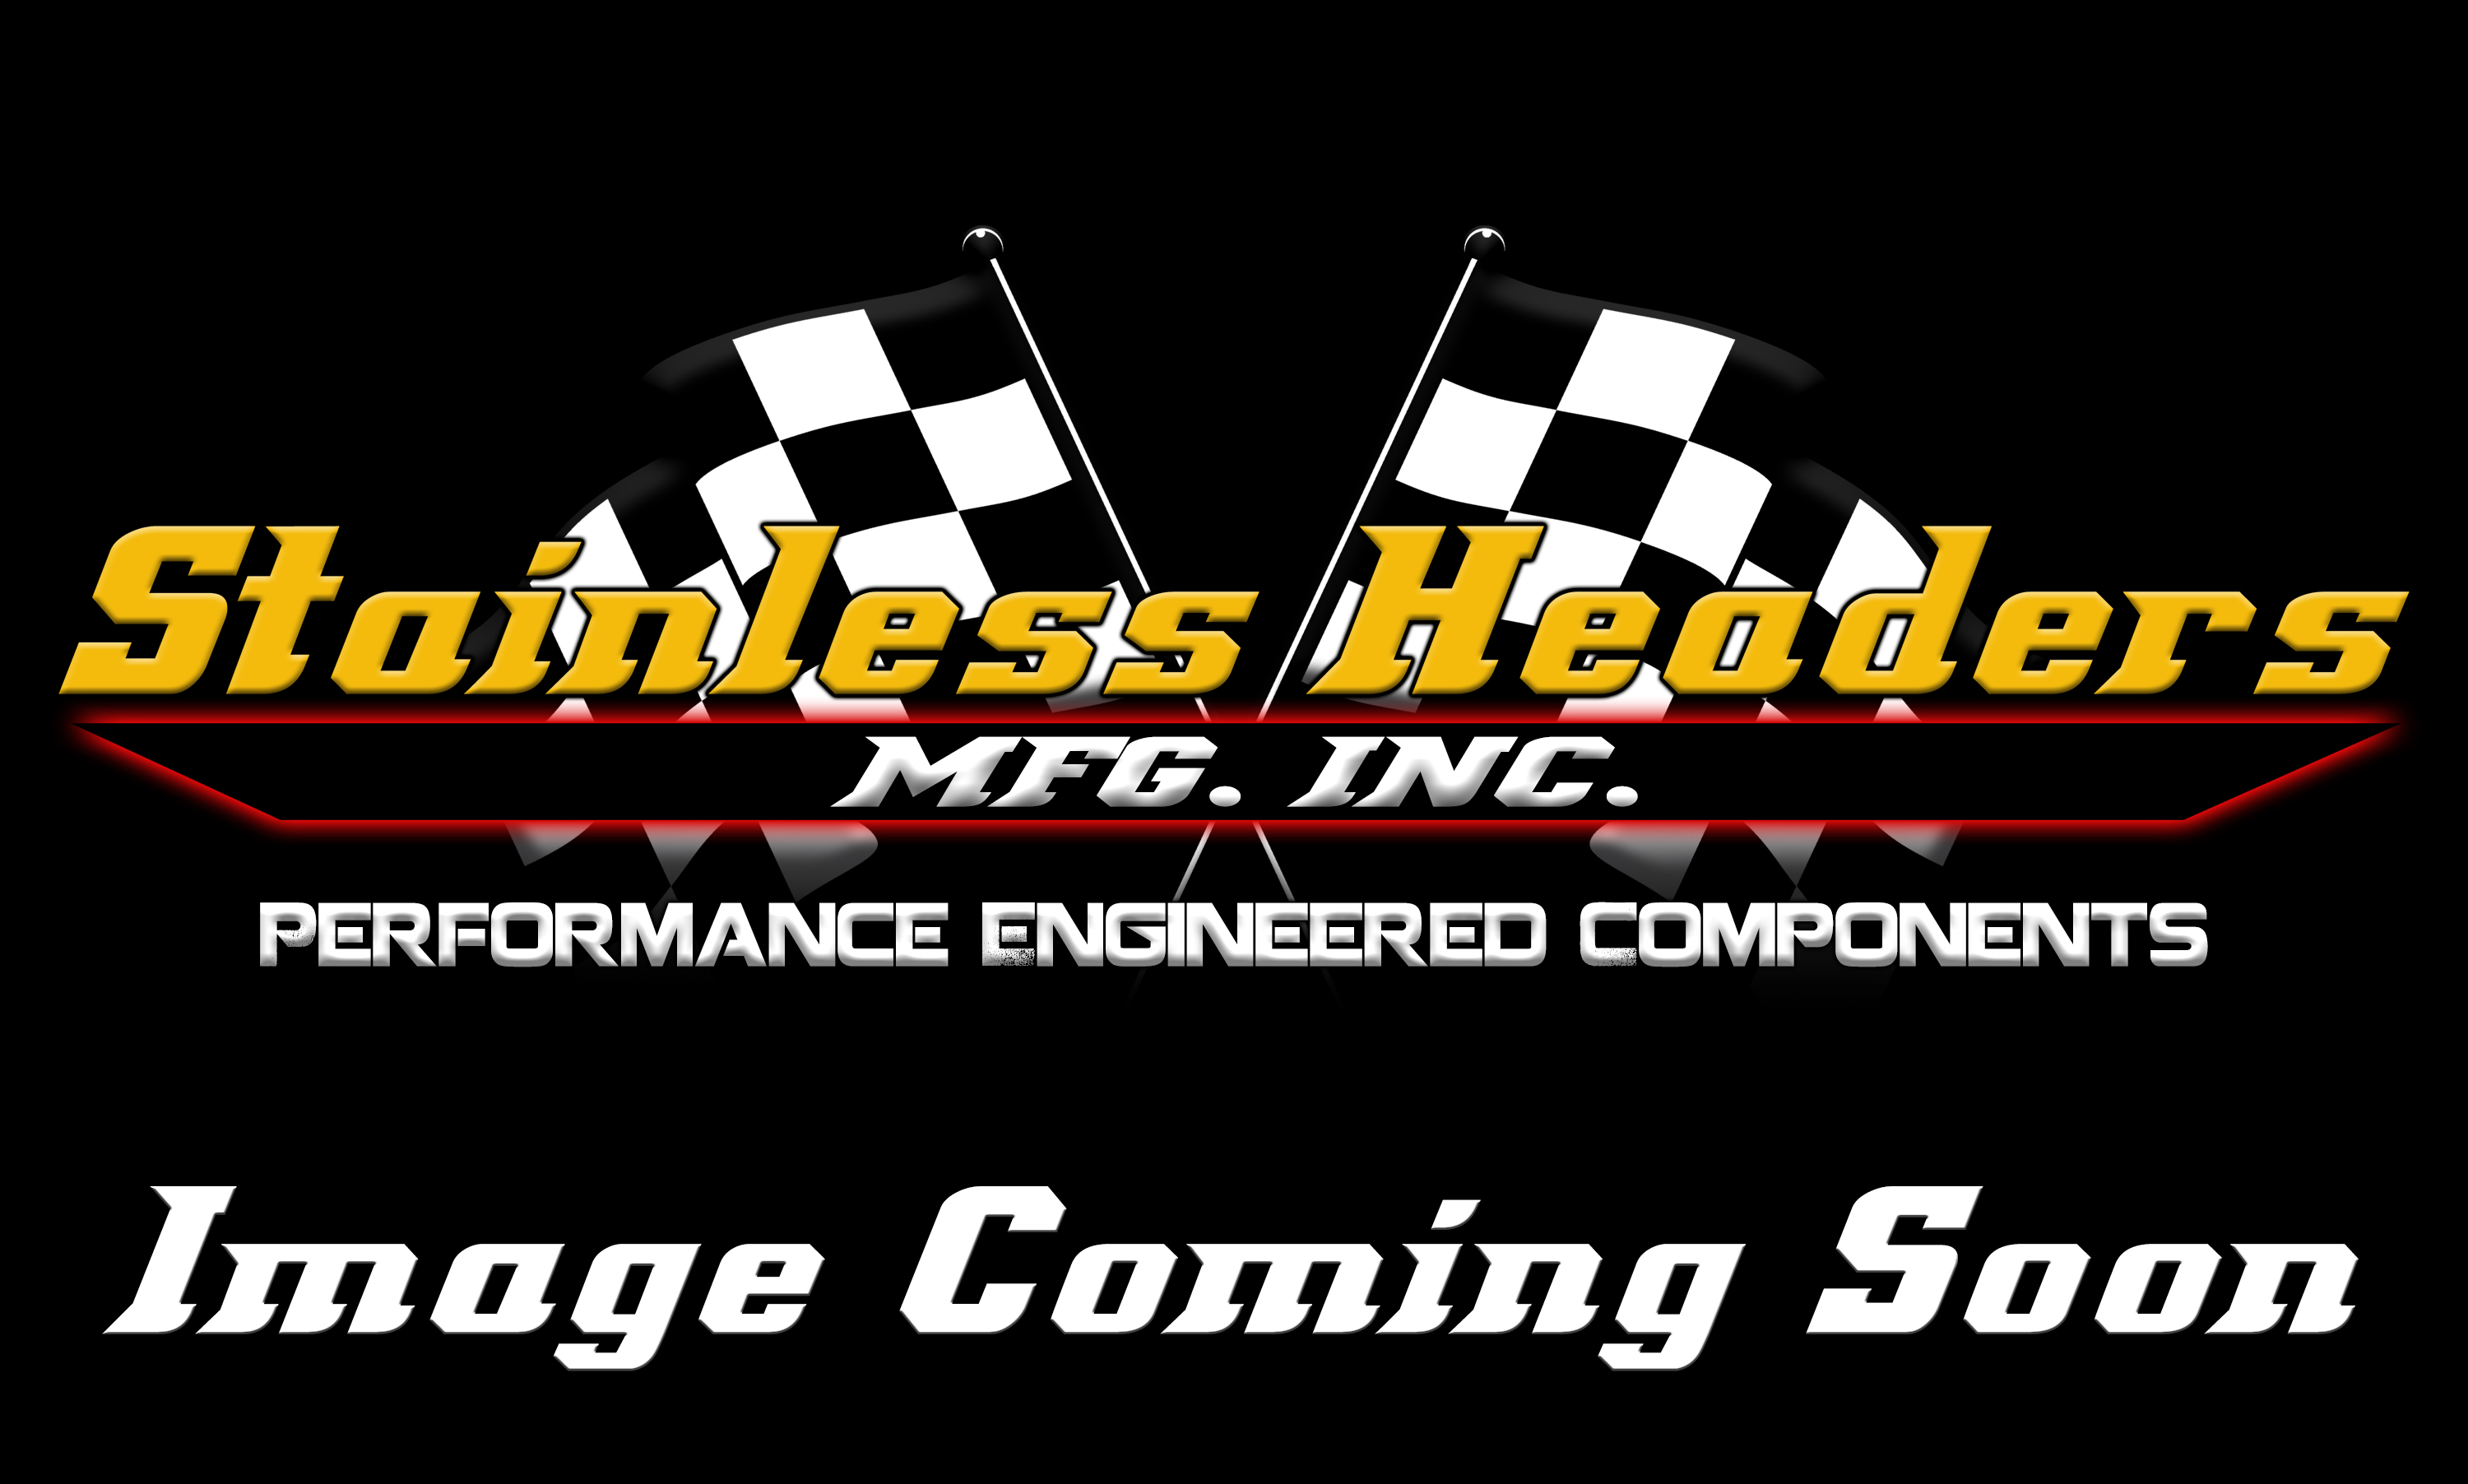 Mild Steel Header Flanges - Chevrolet Mild Steel Header Flanges - Stainless Headers - Big Block Chevy 5.3" Bore Space Mild Steel Header Flange